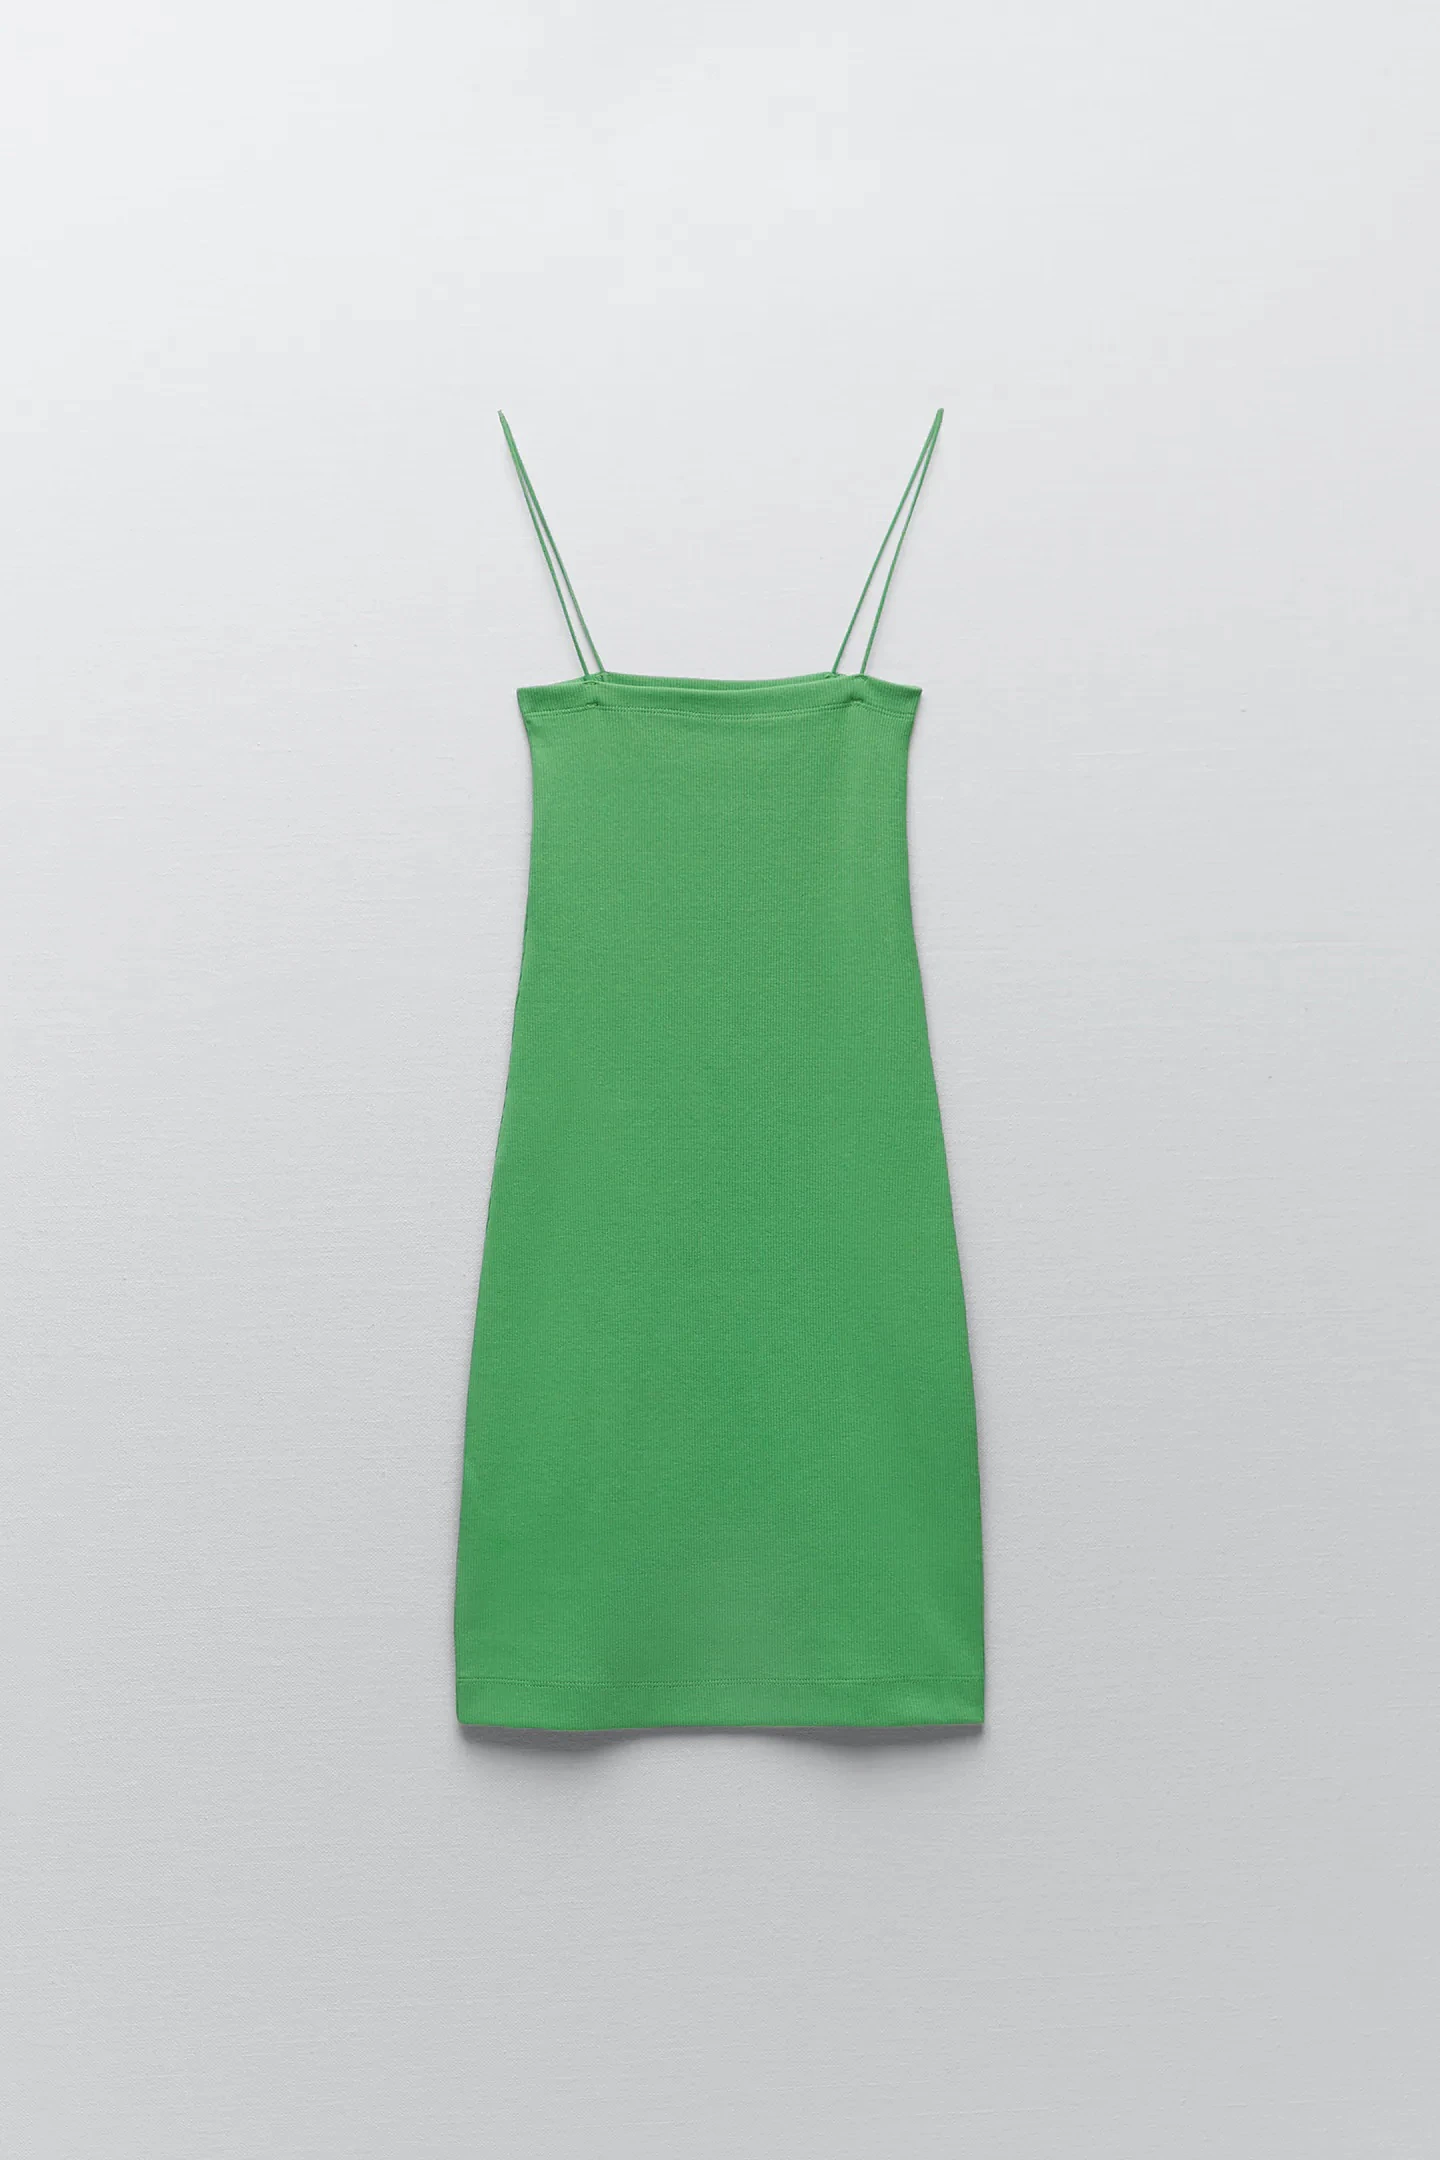 Fotos: Verde que te quiero verde: 15 vestidos de Zara con el color tendencia que y que adelanta el verano | Mujer Hoy